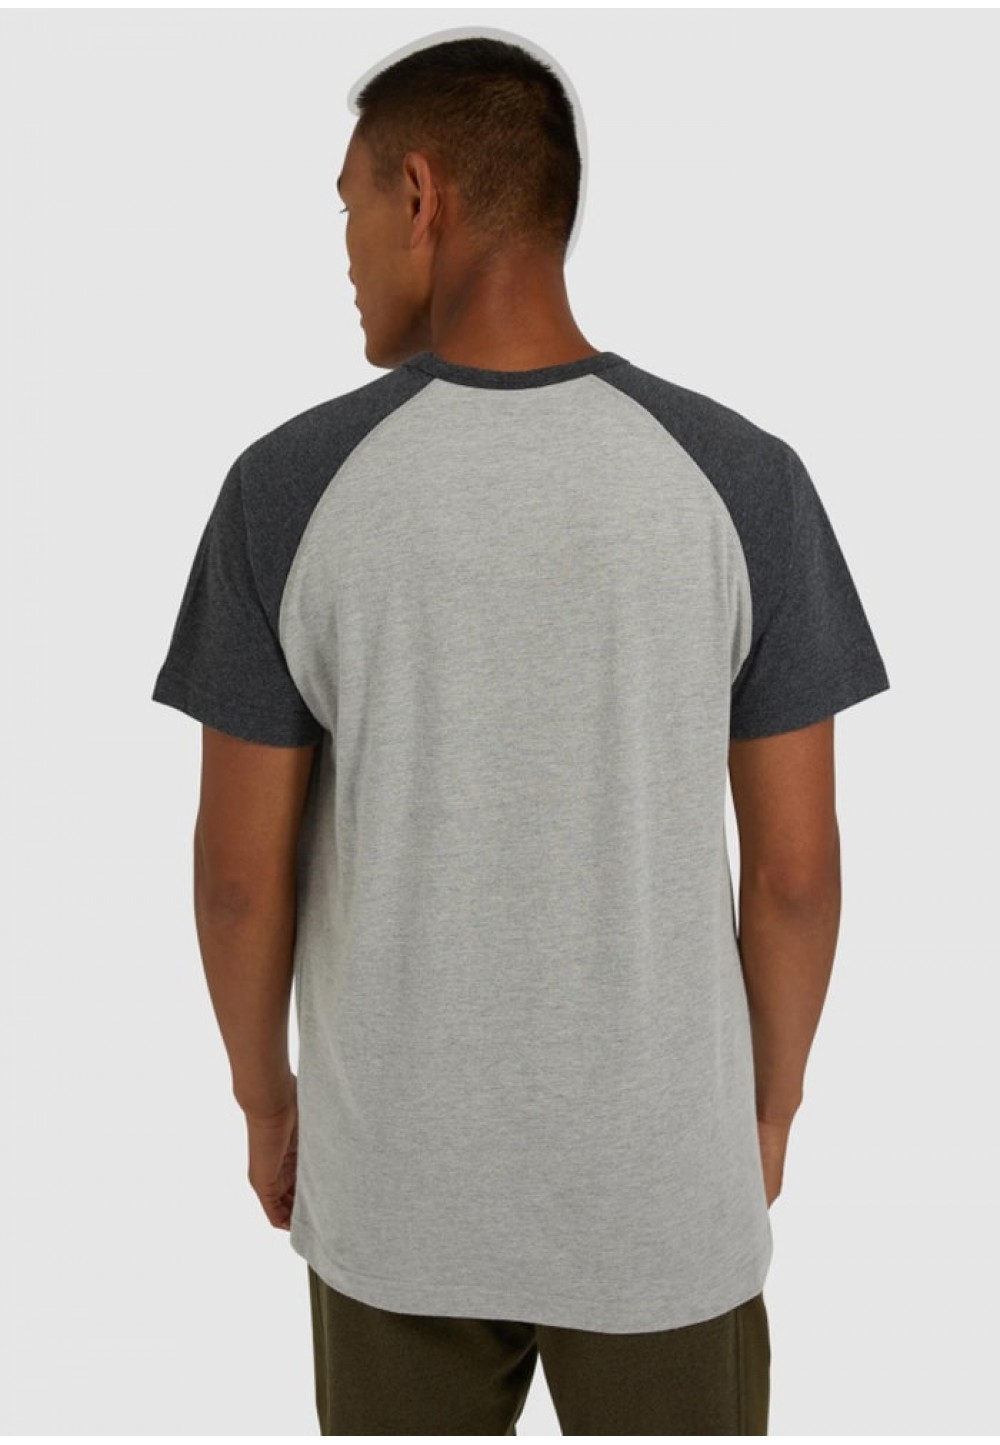 Стильная мужская футболка серого цвета